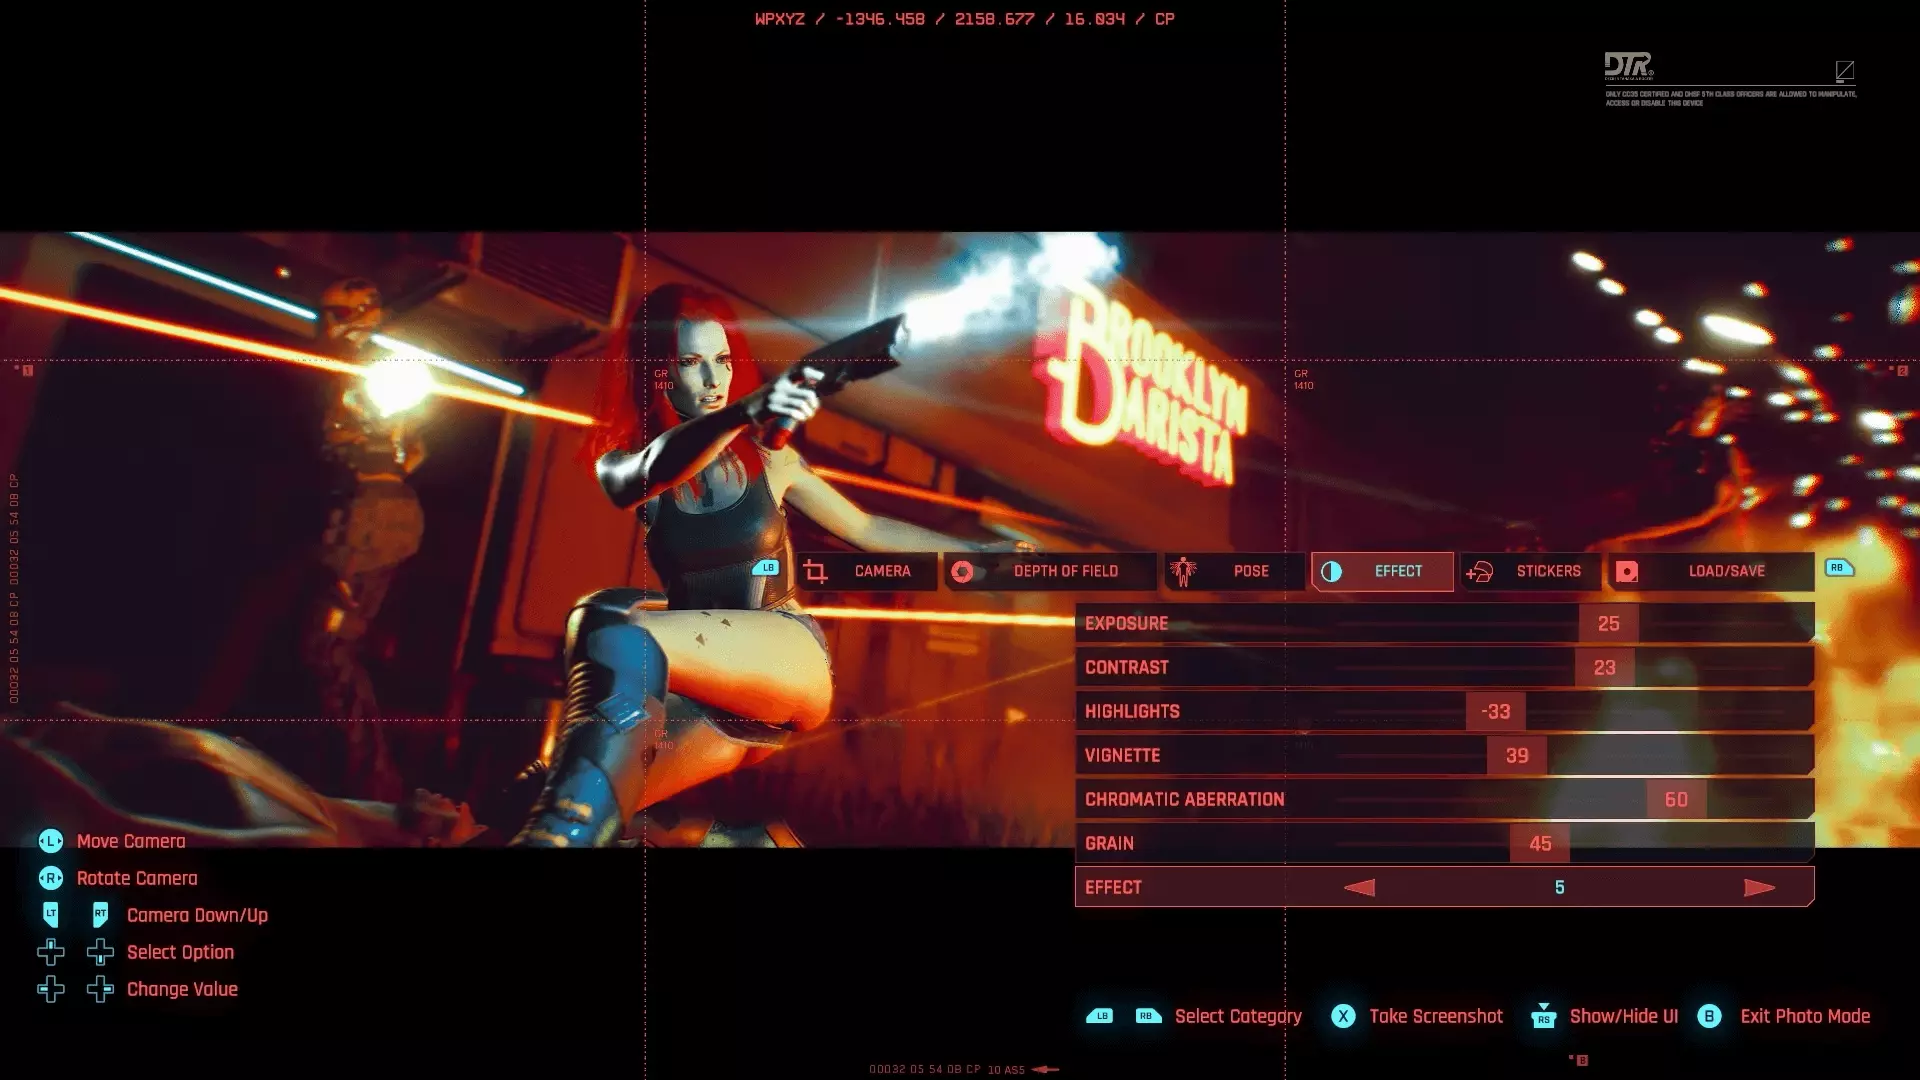 CD Projekt RED выпустила новый трейлер Cyberpunk 2077, демонстрирующий фоторежим игры, который позволит вам делать снимки и сохранять их для потомков.